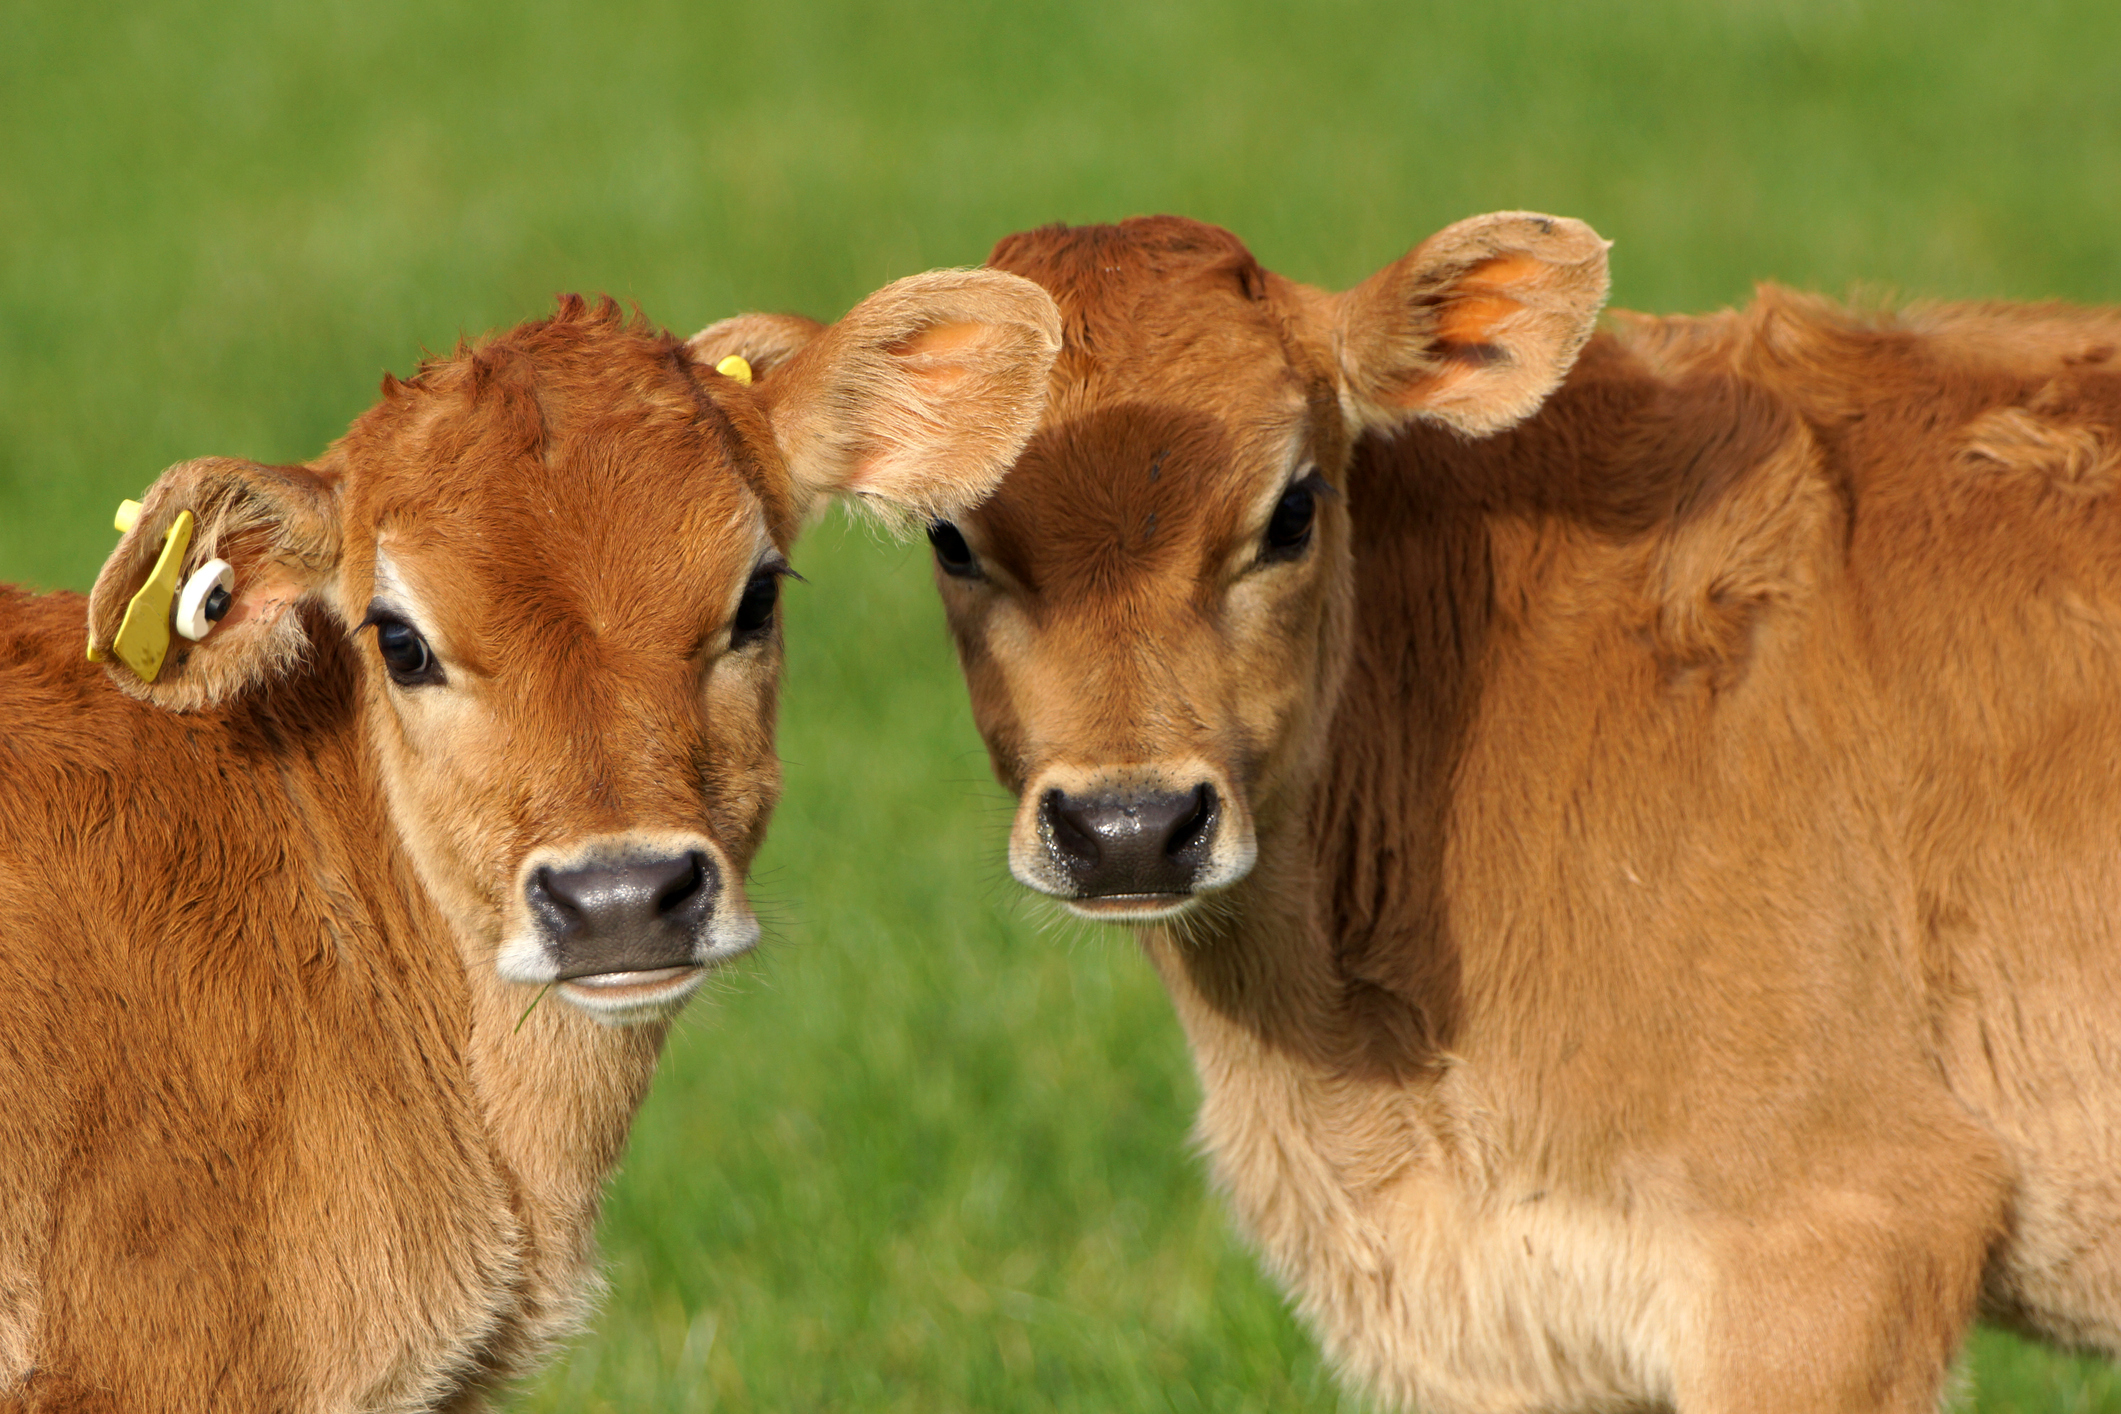 Cute Jersey calves, New Zealand